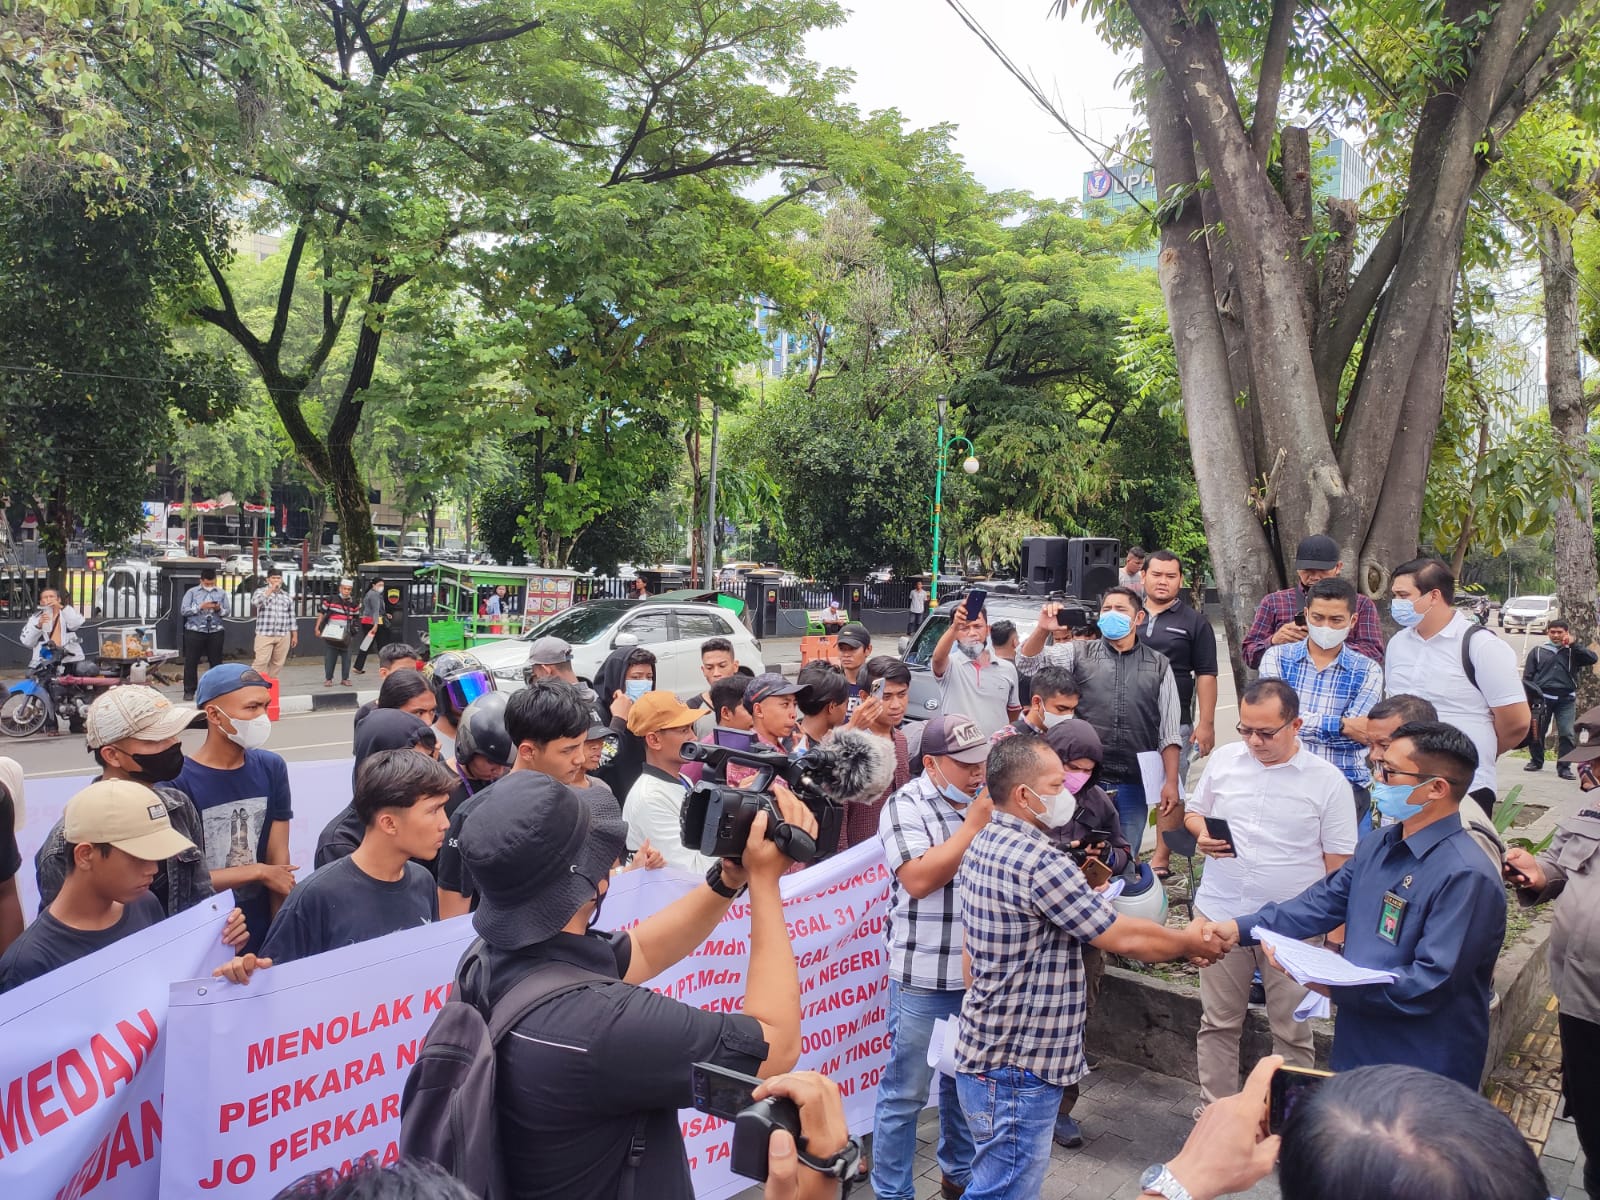 Massa JPKP Demo PN Medan, Berantas Mafia Perkara di Jalan Kuda